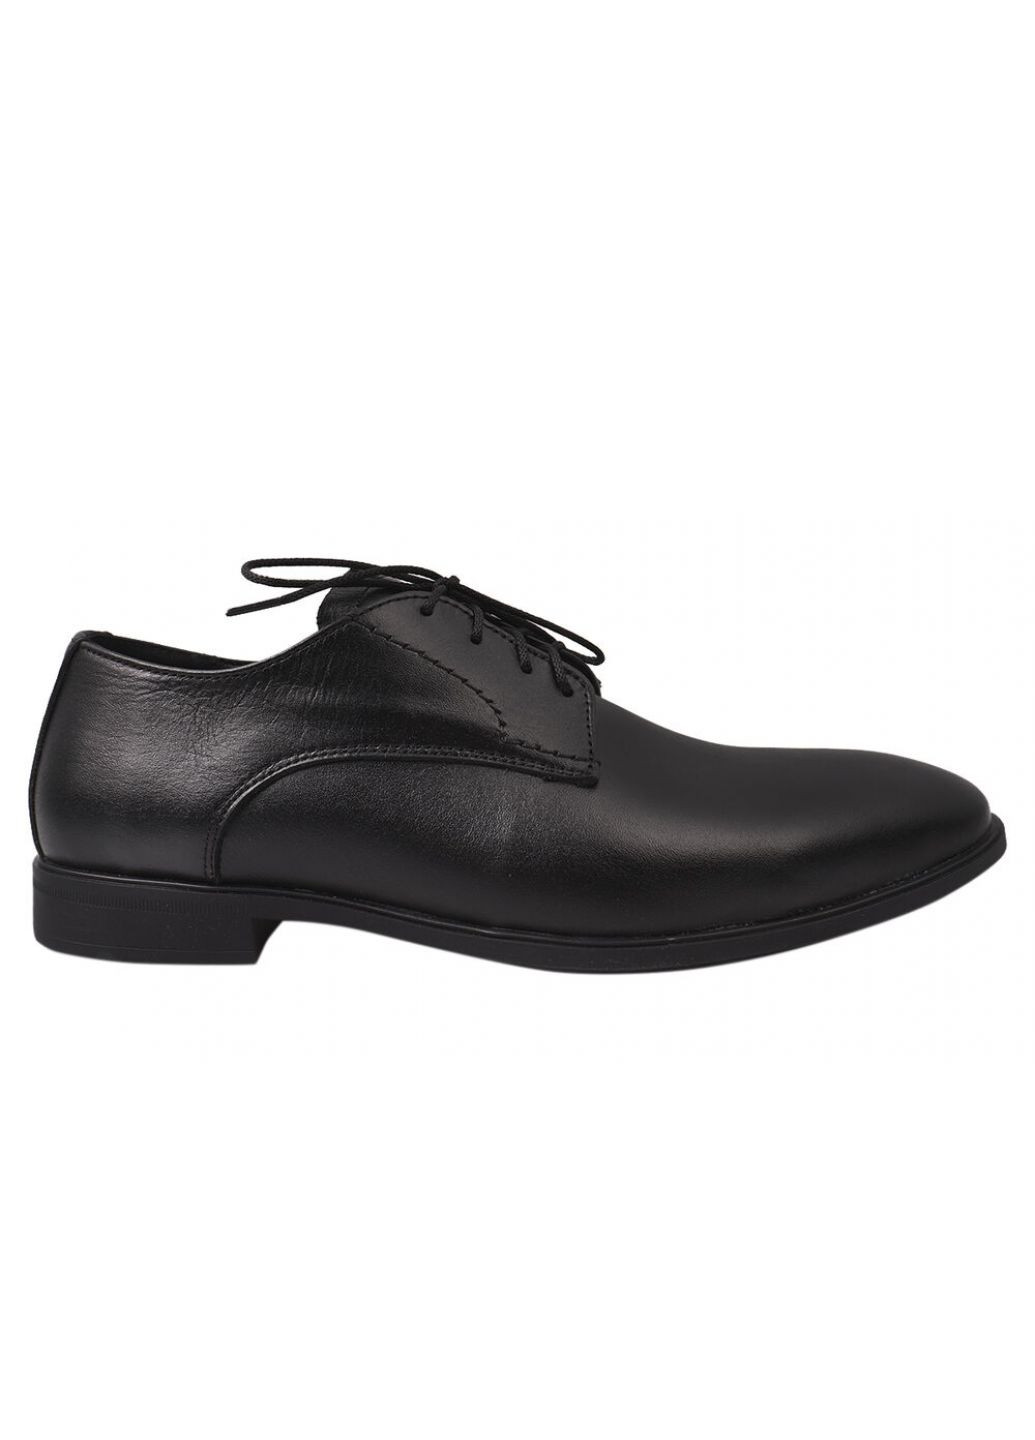 Черные туфли мужские из натуральной кожи, на низком ходу, на шнуровке, цвет черный, украина VAN KRISTI